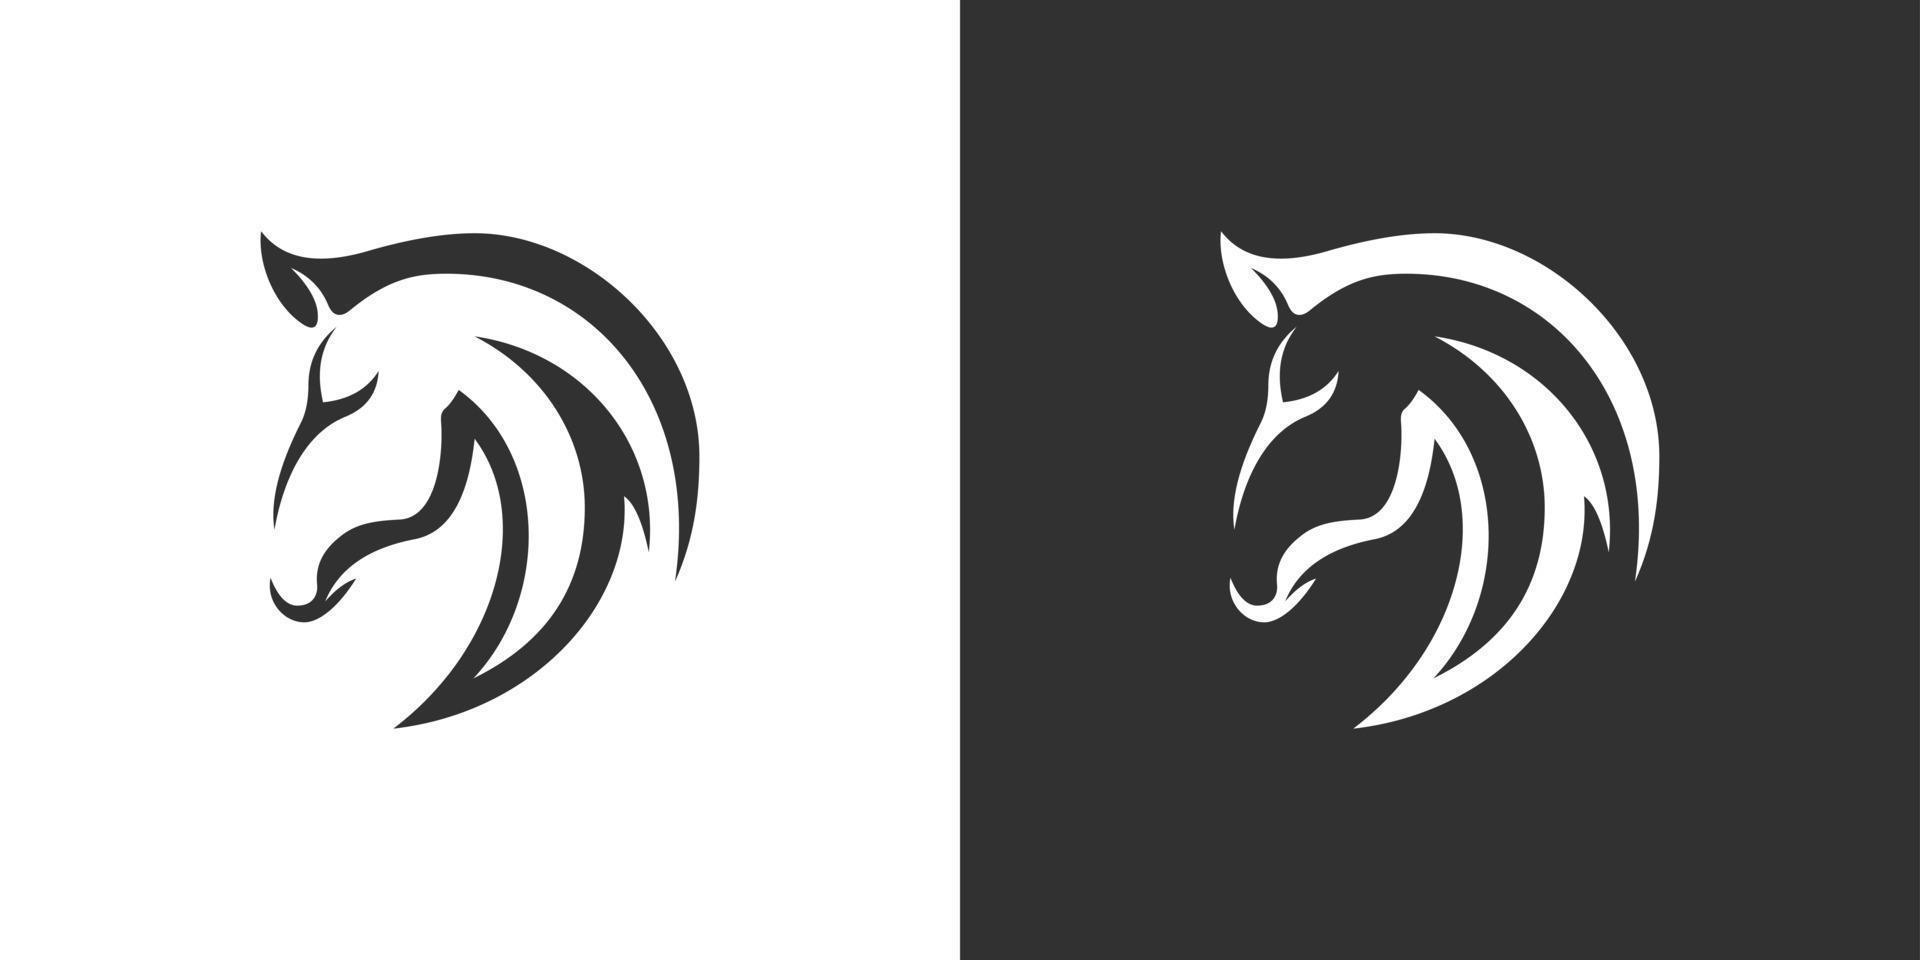 huvud häst vektor logotyp designkoncept på svart och vit bakgrund.